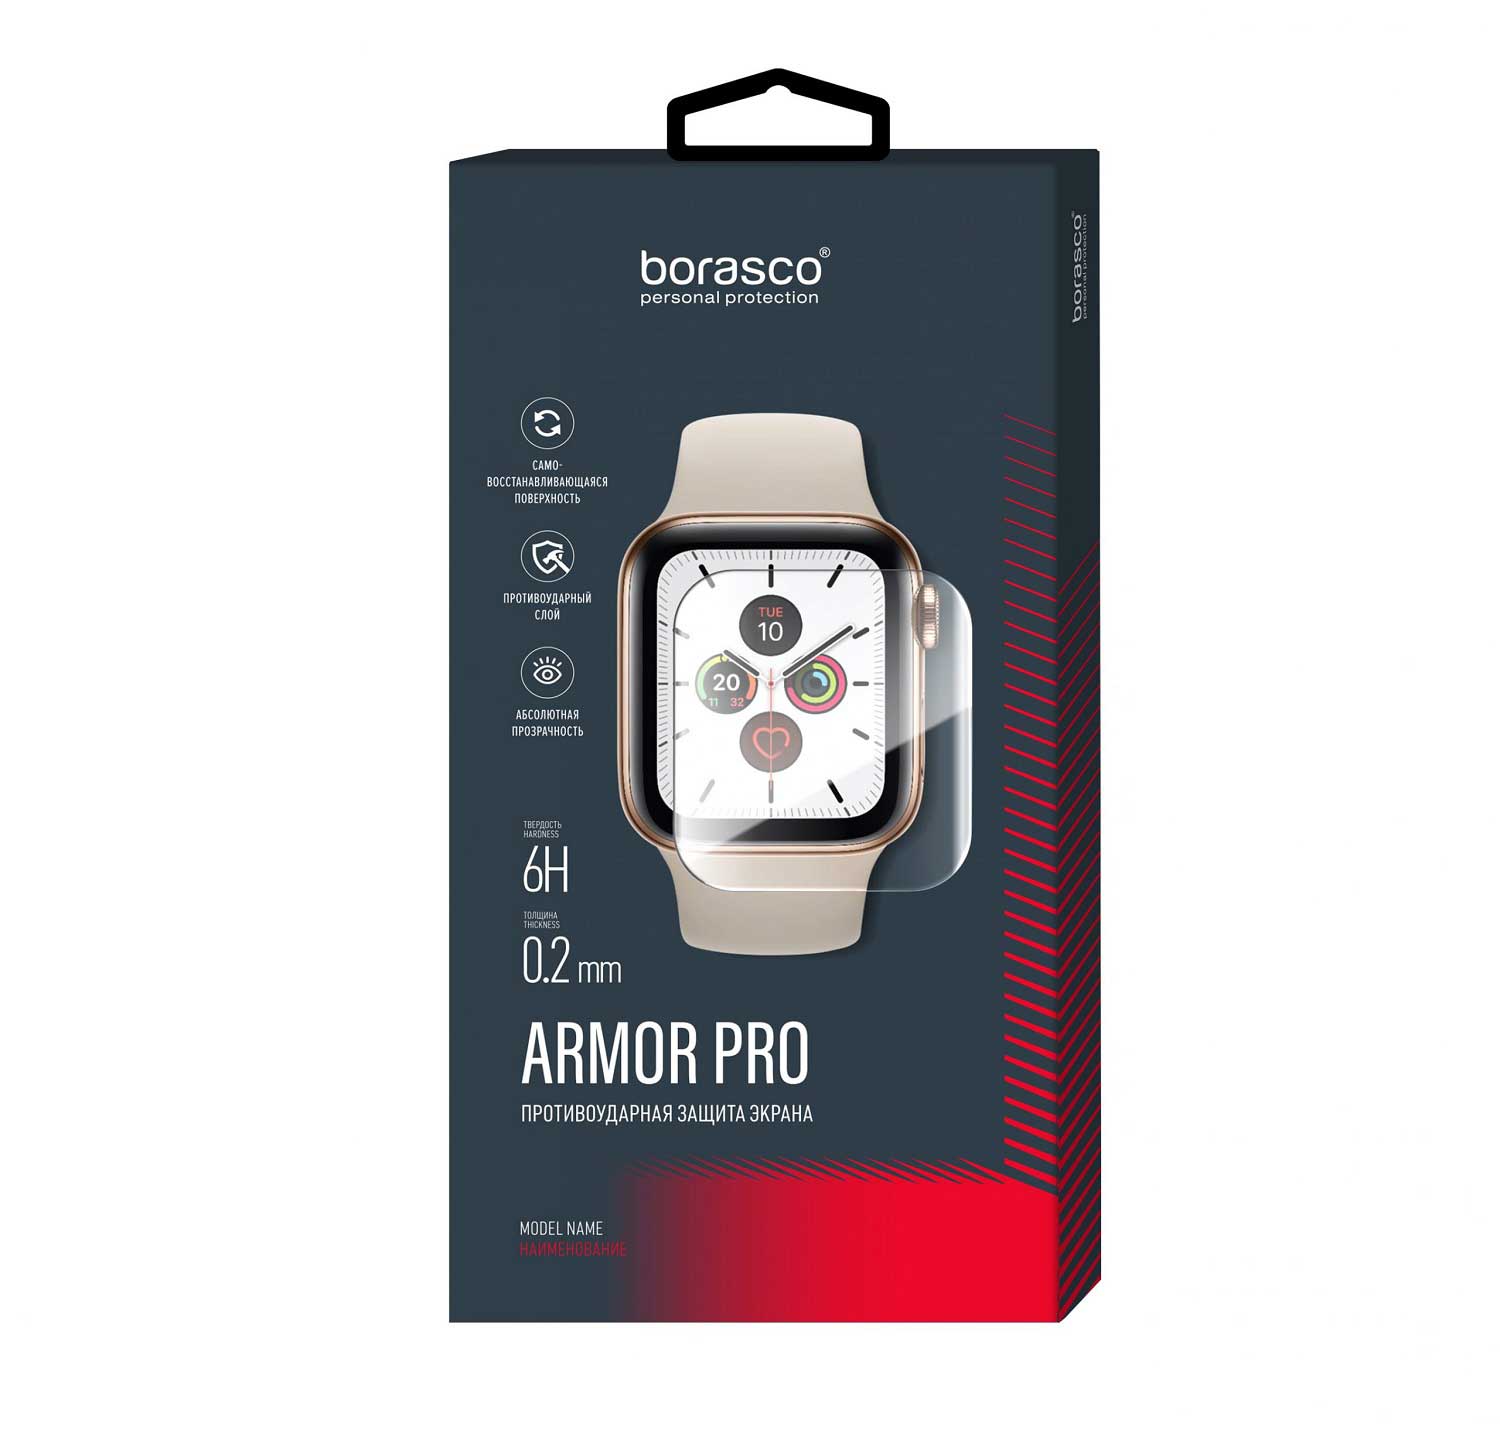 Защита экрана BoraSCO Armor Pro для Xiaomi Mi Band 6 защита экрана borasco armor pro для honor band 4 5